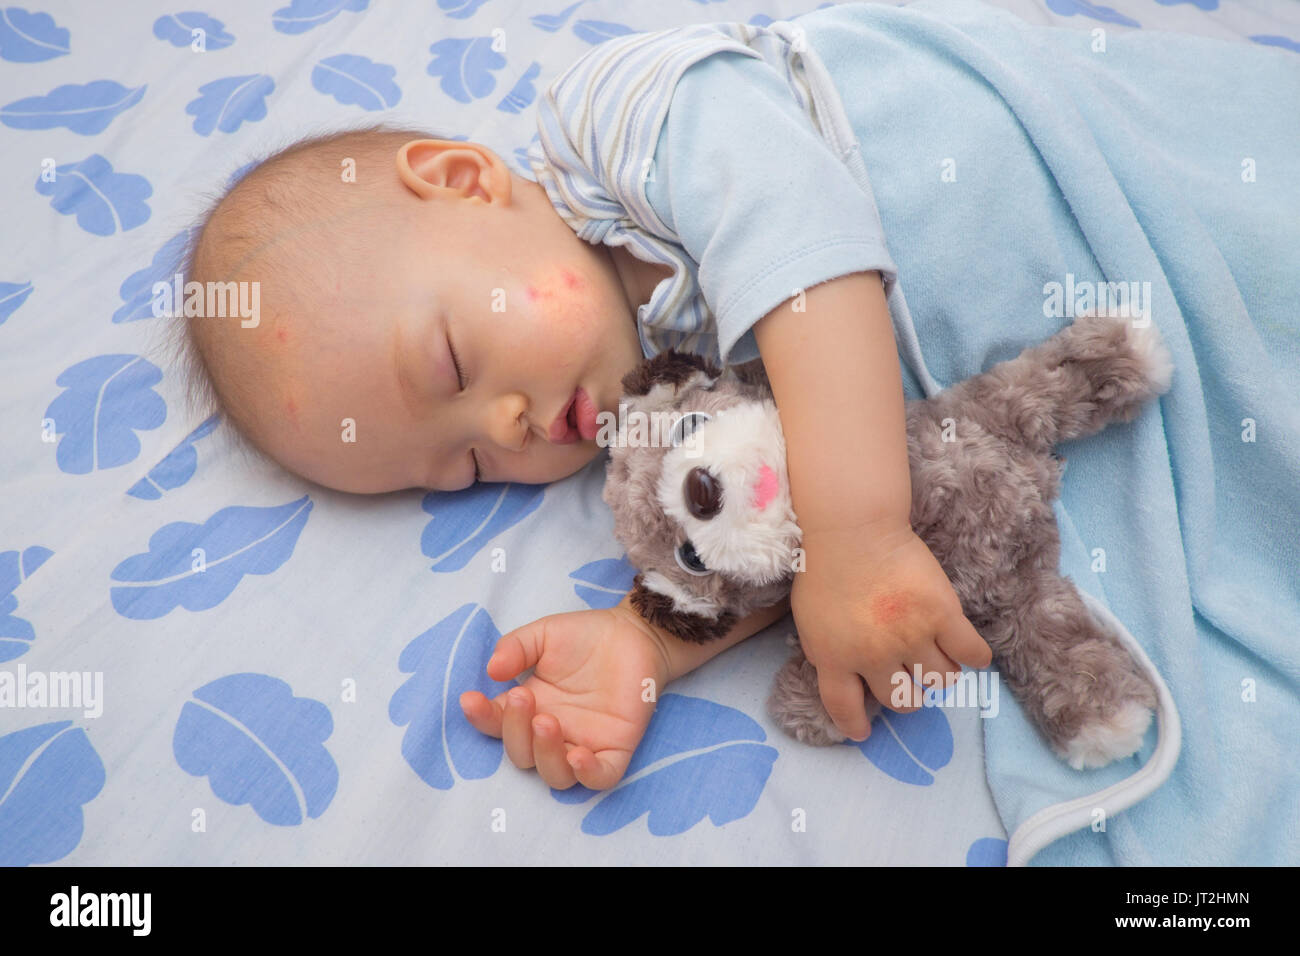 Schlafen asiatischen Baby mit roten Fleck von mückenstich auf einer Wange und Hand, Süße 12 Monate altes Kleinkind Junge ein Nickerchen halten Hund Spielzeug auf dem Bett Stockfoto